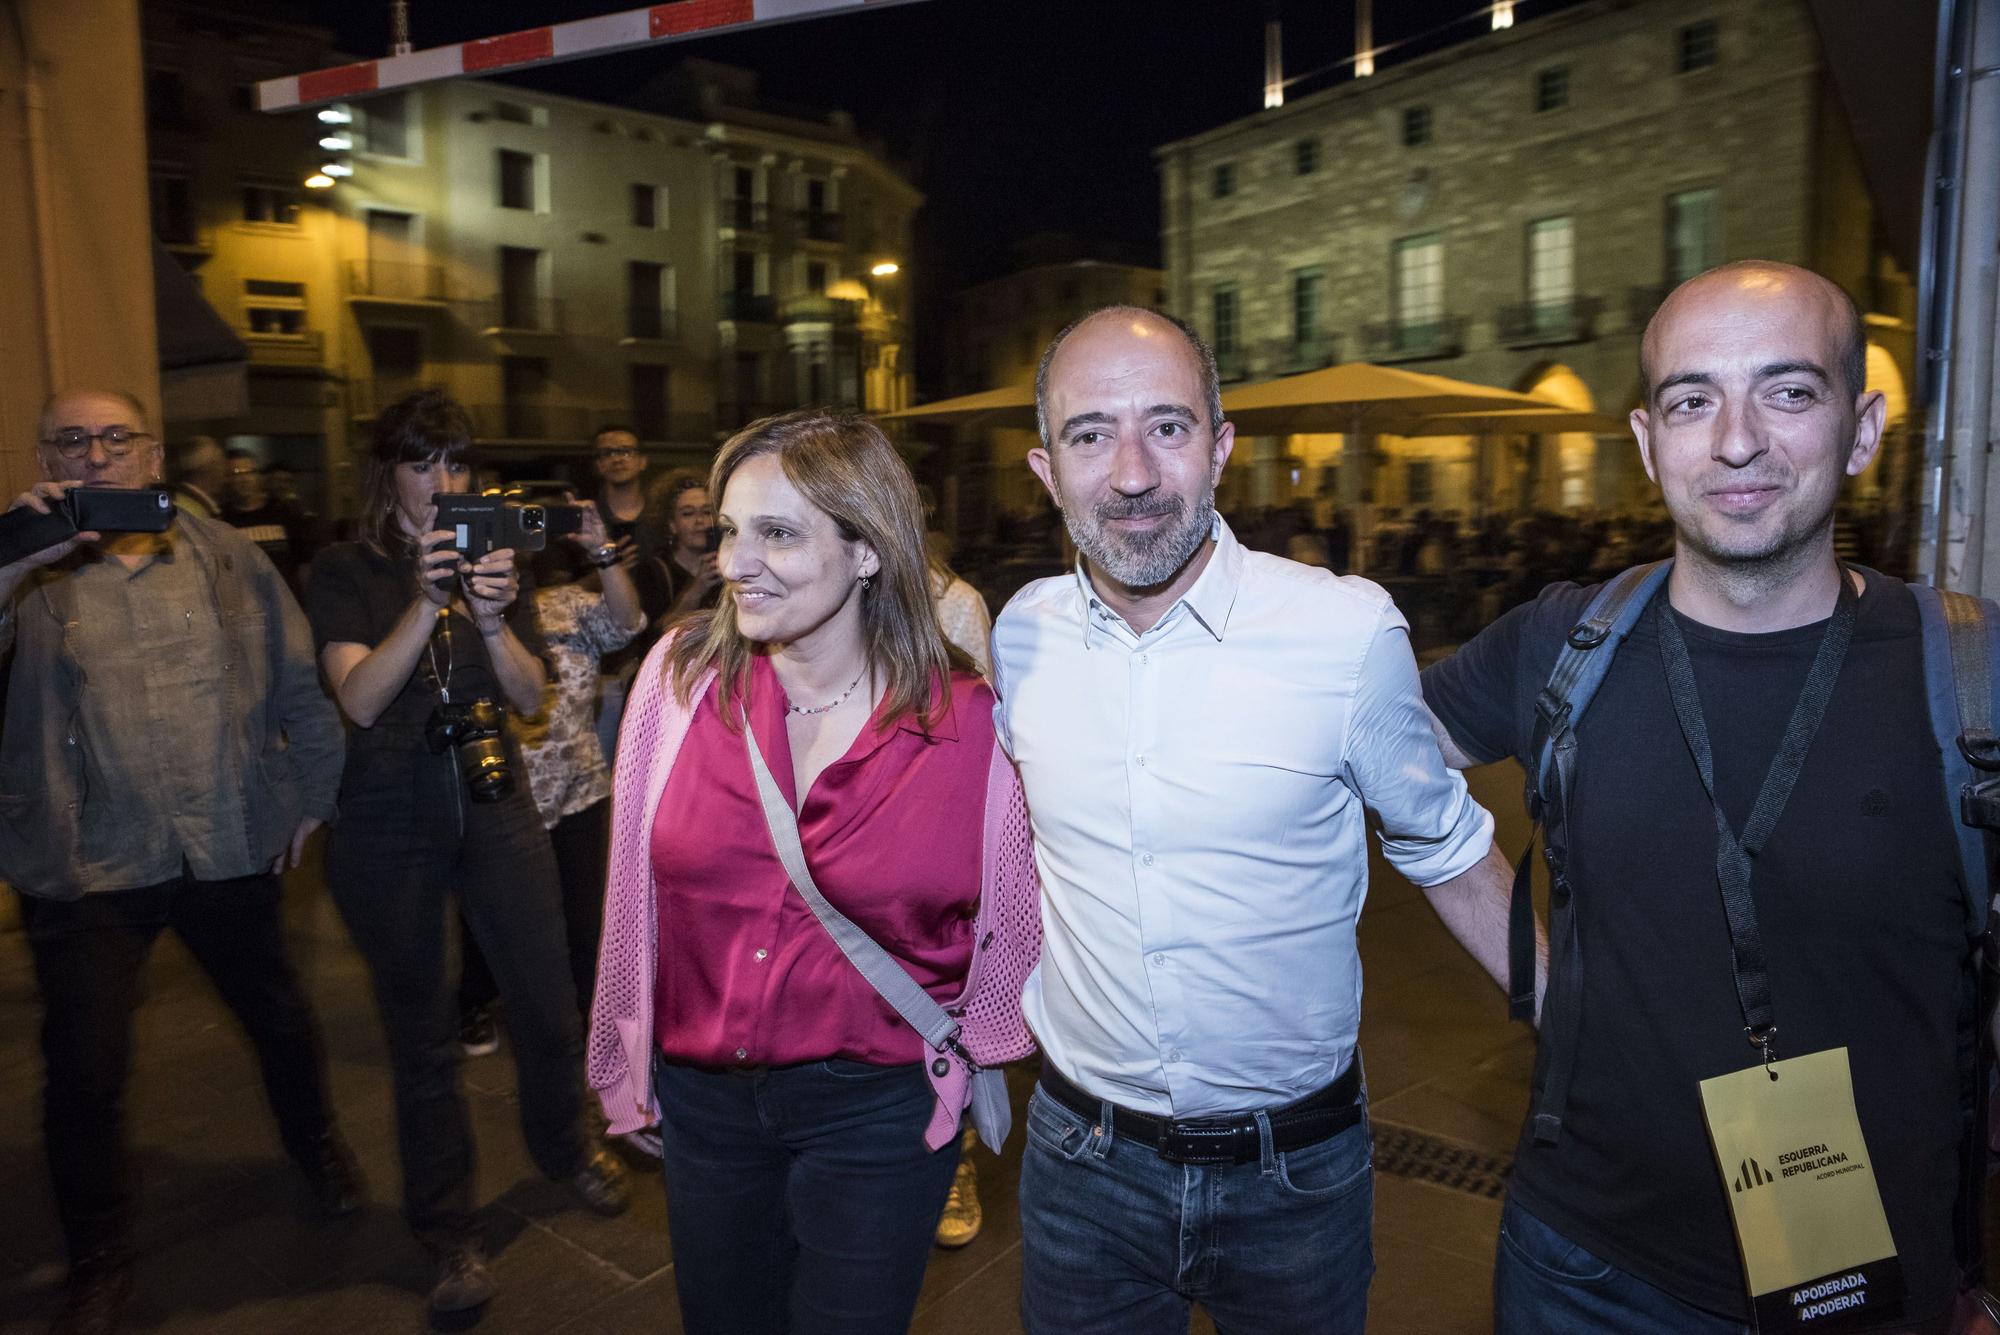 La nit electoral del 28-M, a Manresa